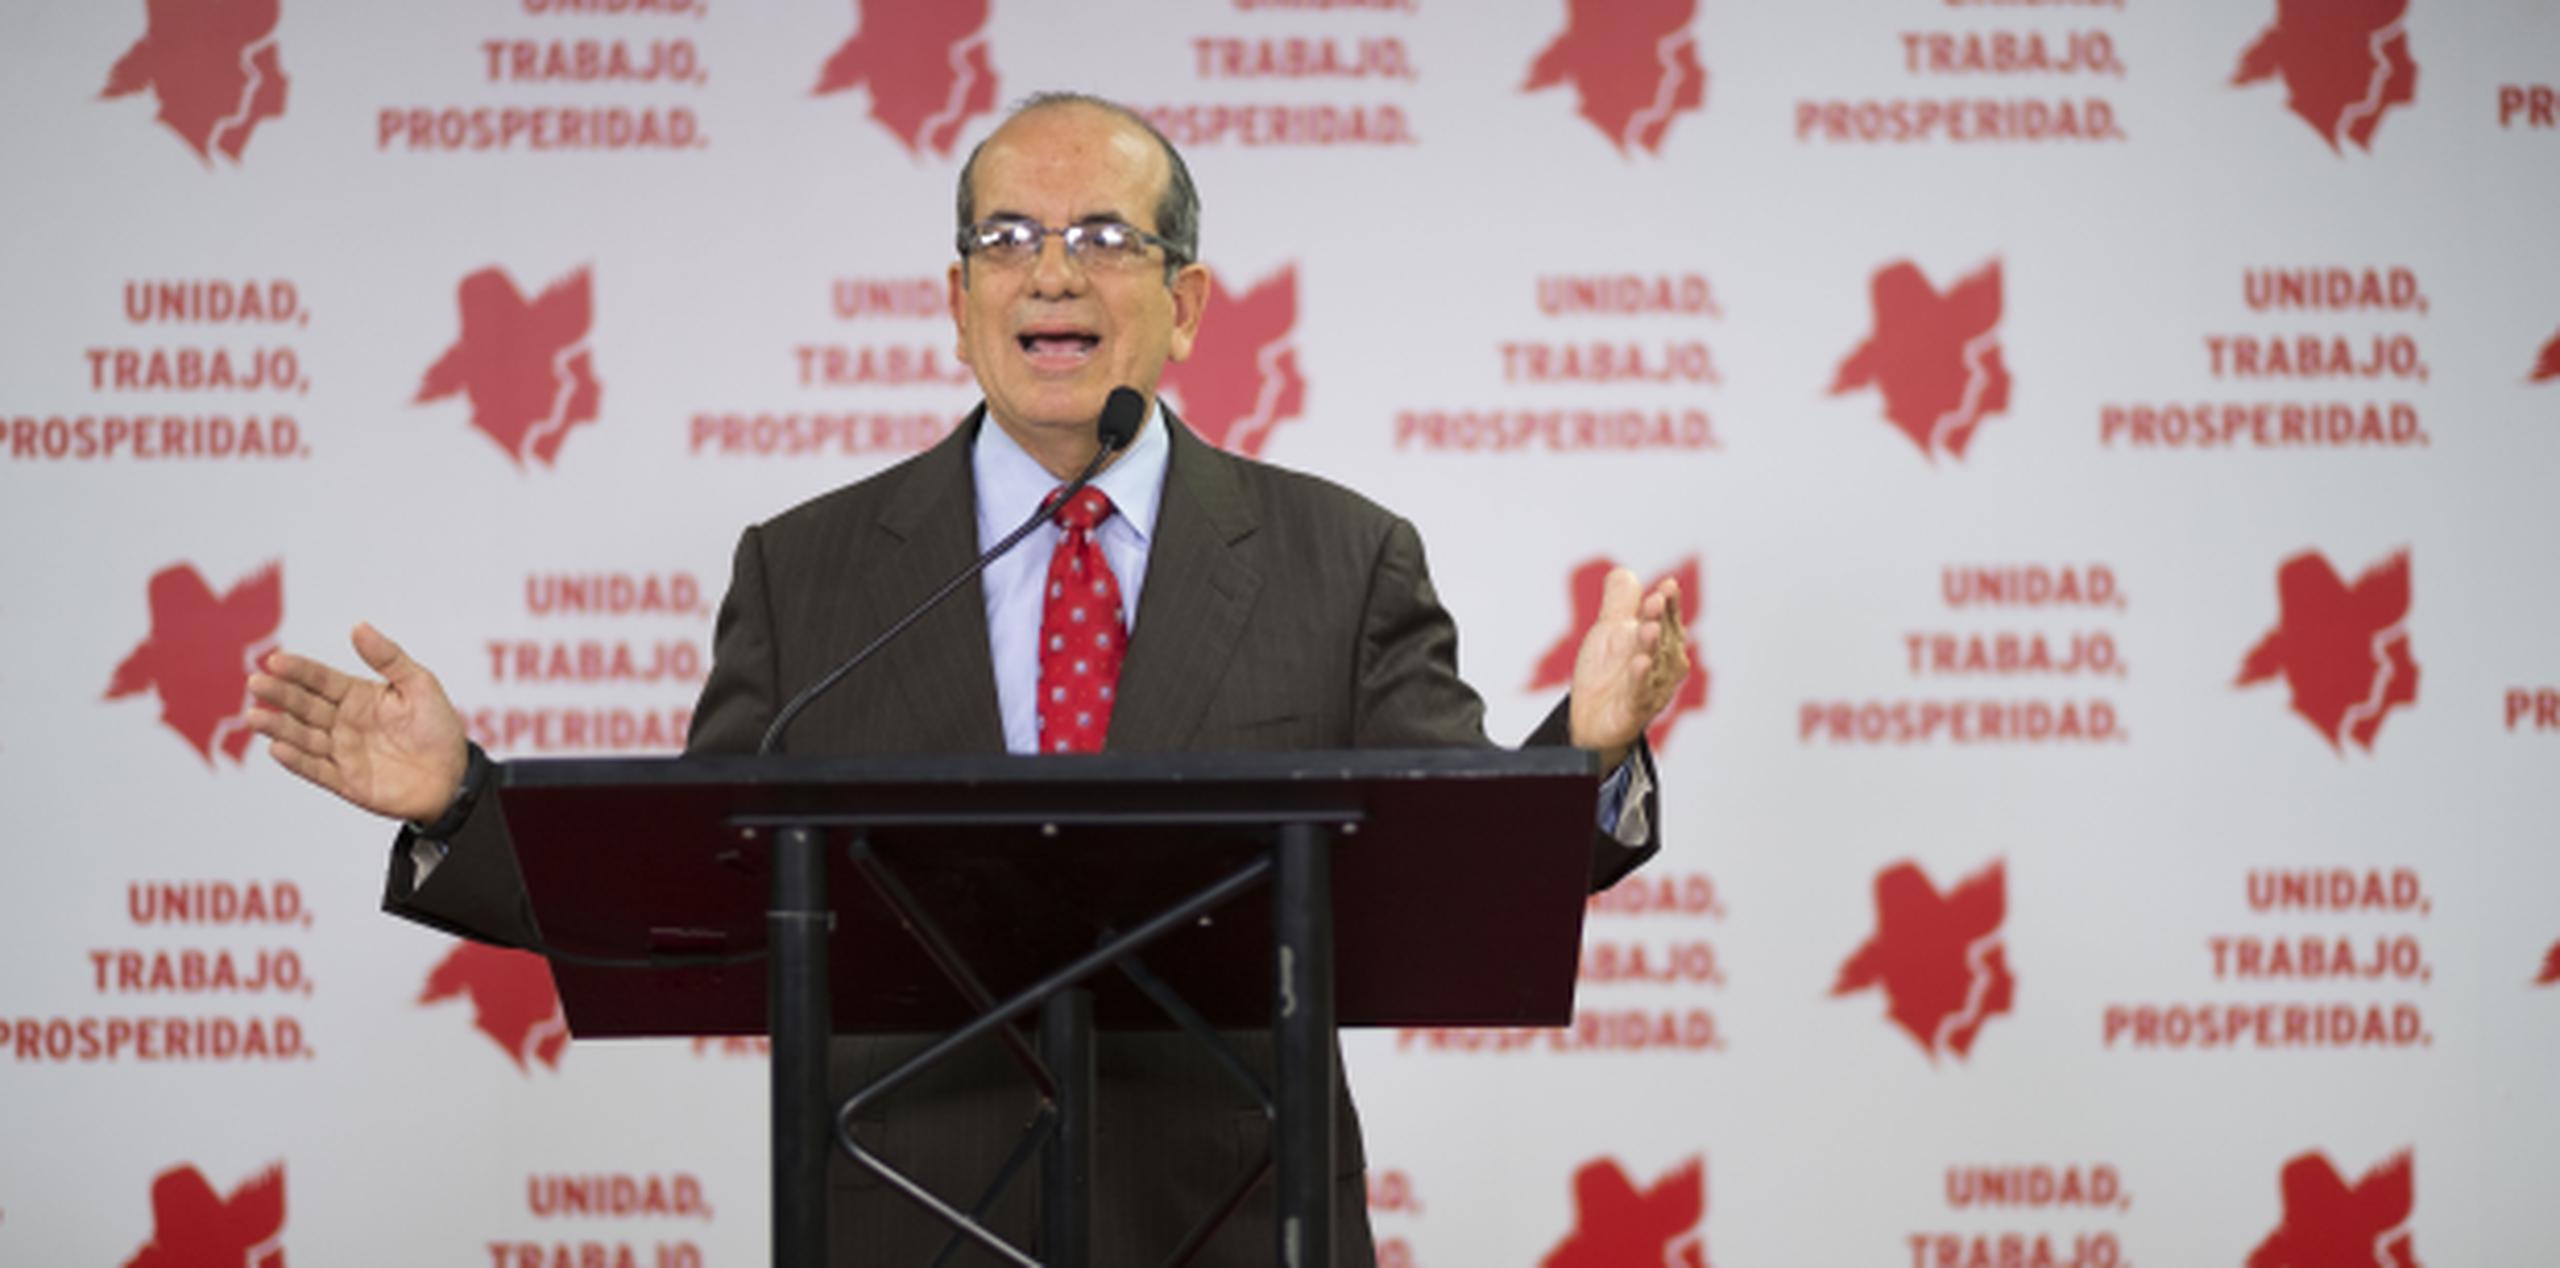 El exgobernador Aníbal Acevedo Vilá aspira a presidir nuevamente el PPD. (Foto/ tonito.zayas@gfrmedia.com)